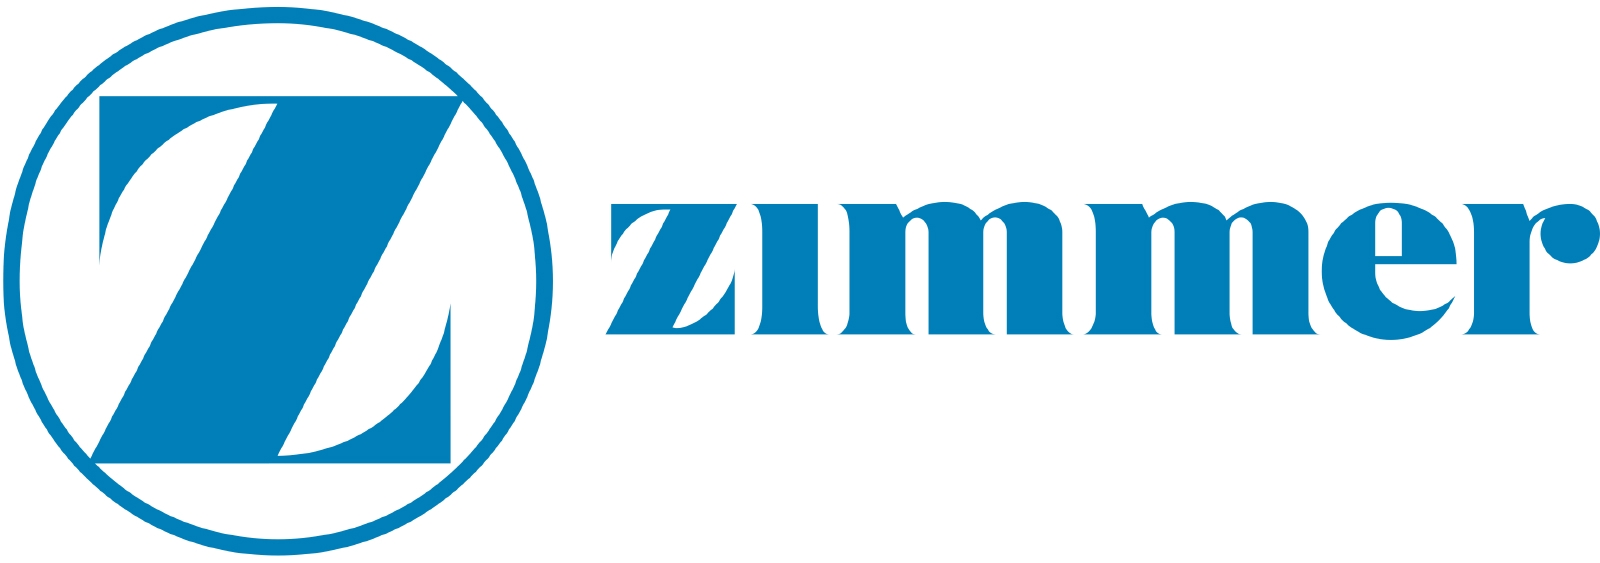 Zimmer_logo-1.jpg